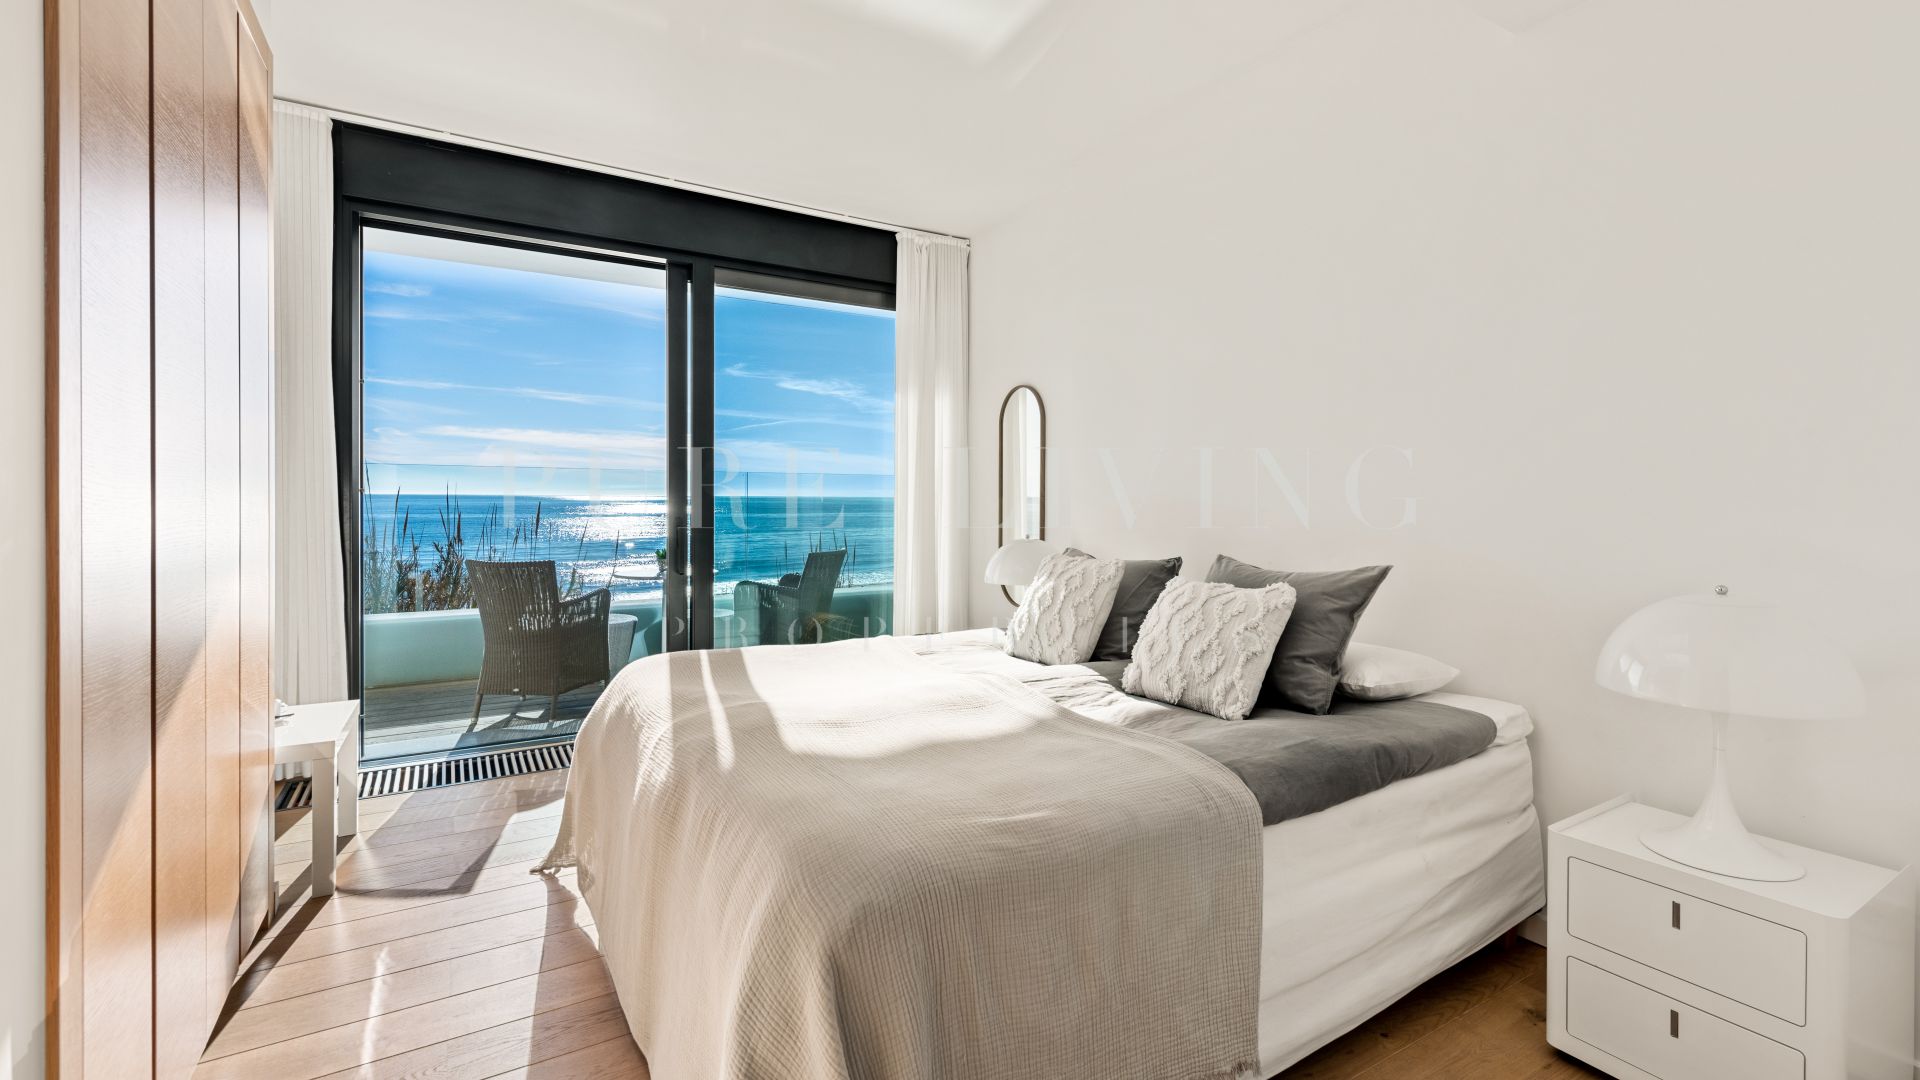 Outstanding front line beach six bedroom villa in Costabella